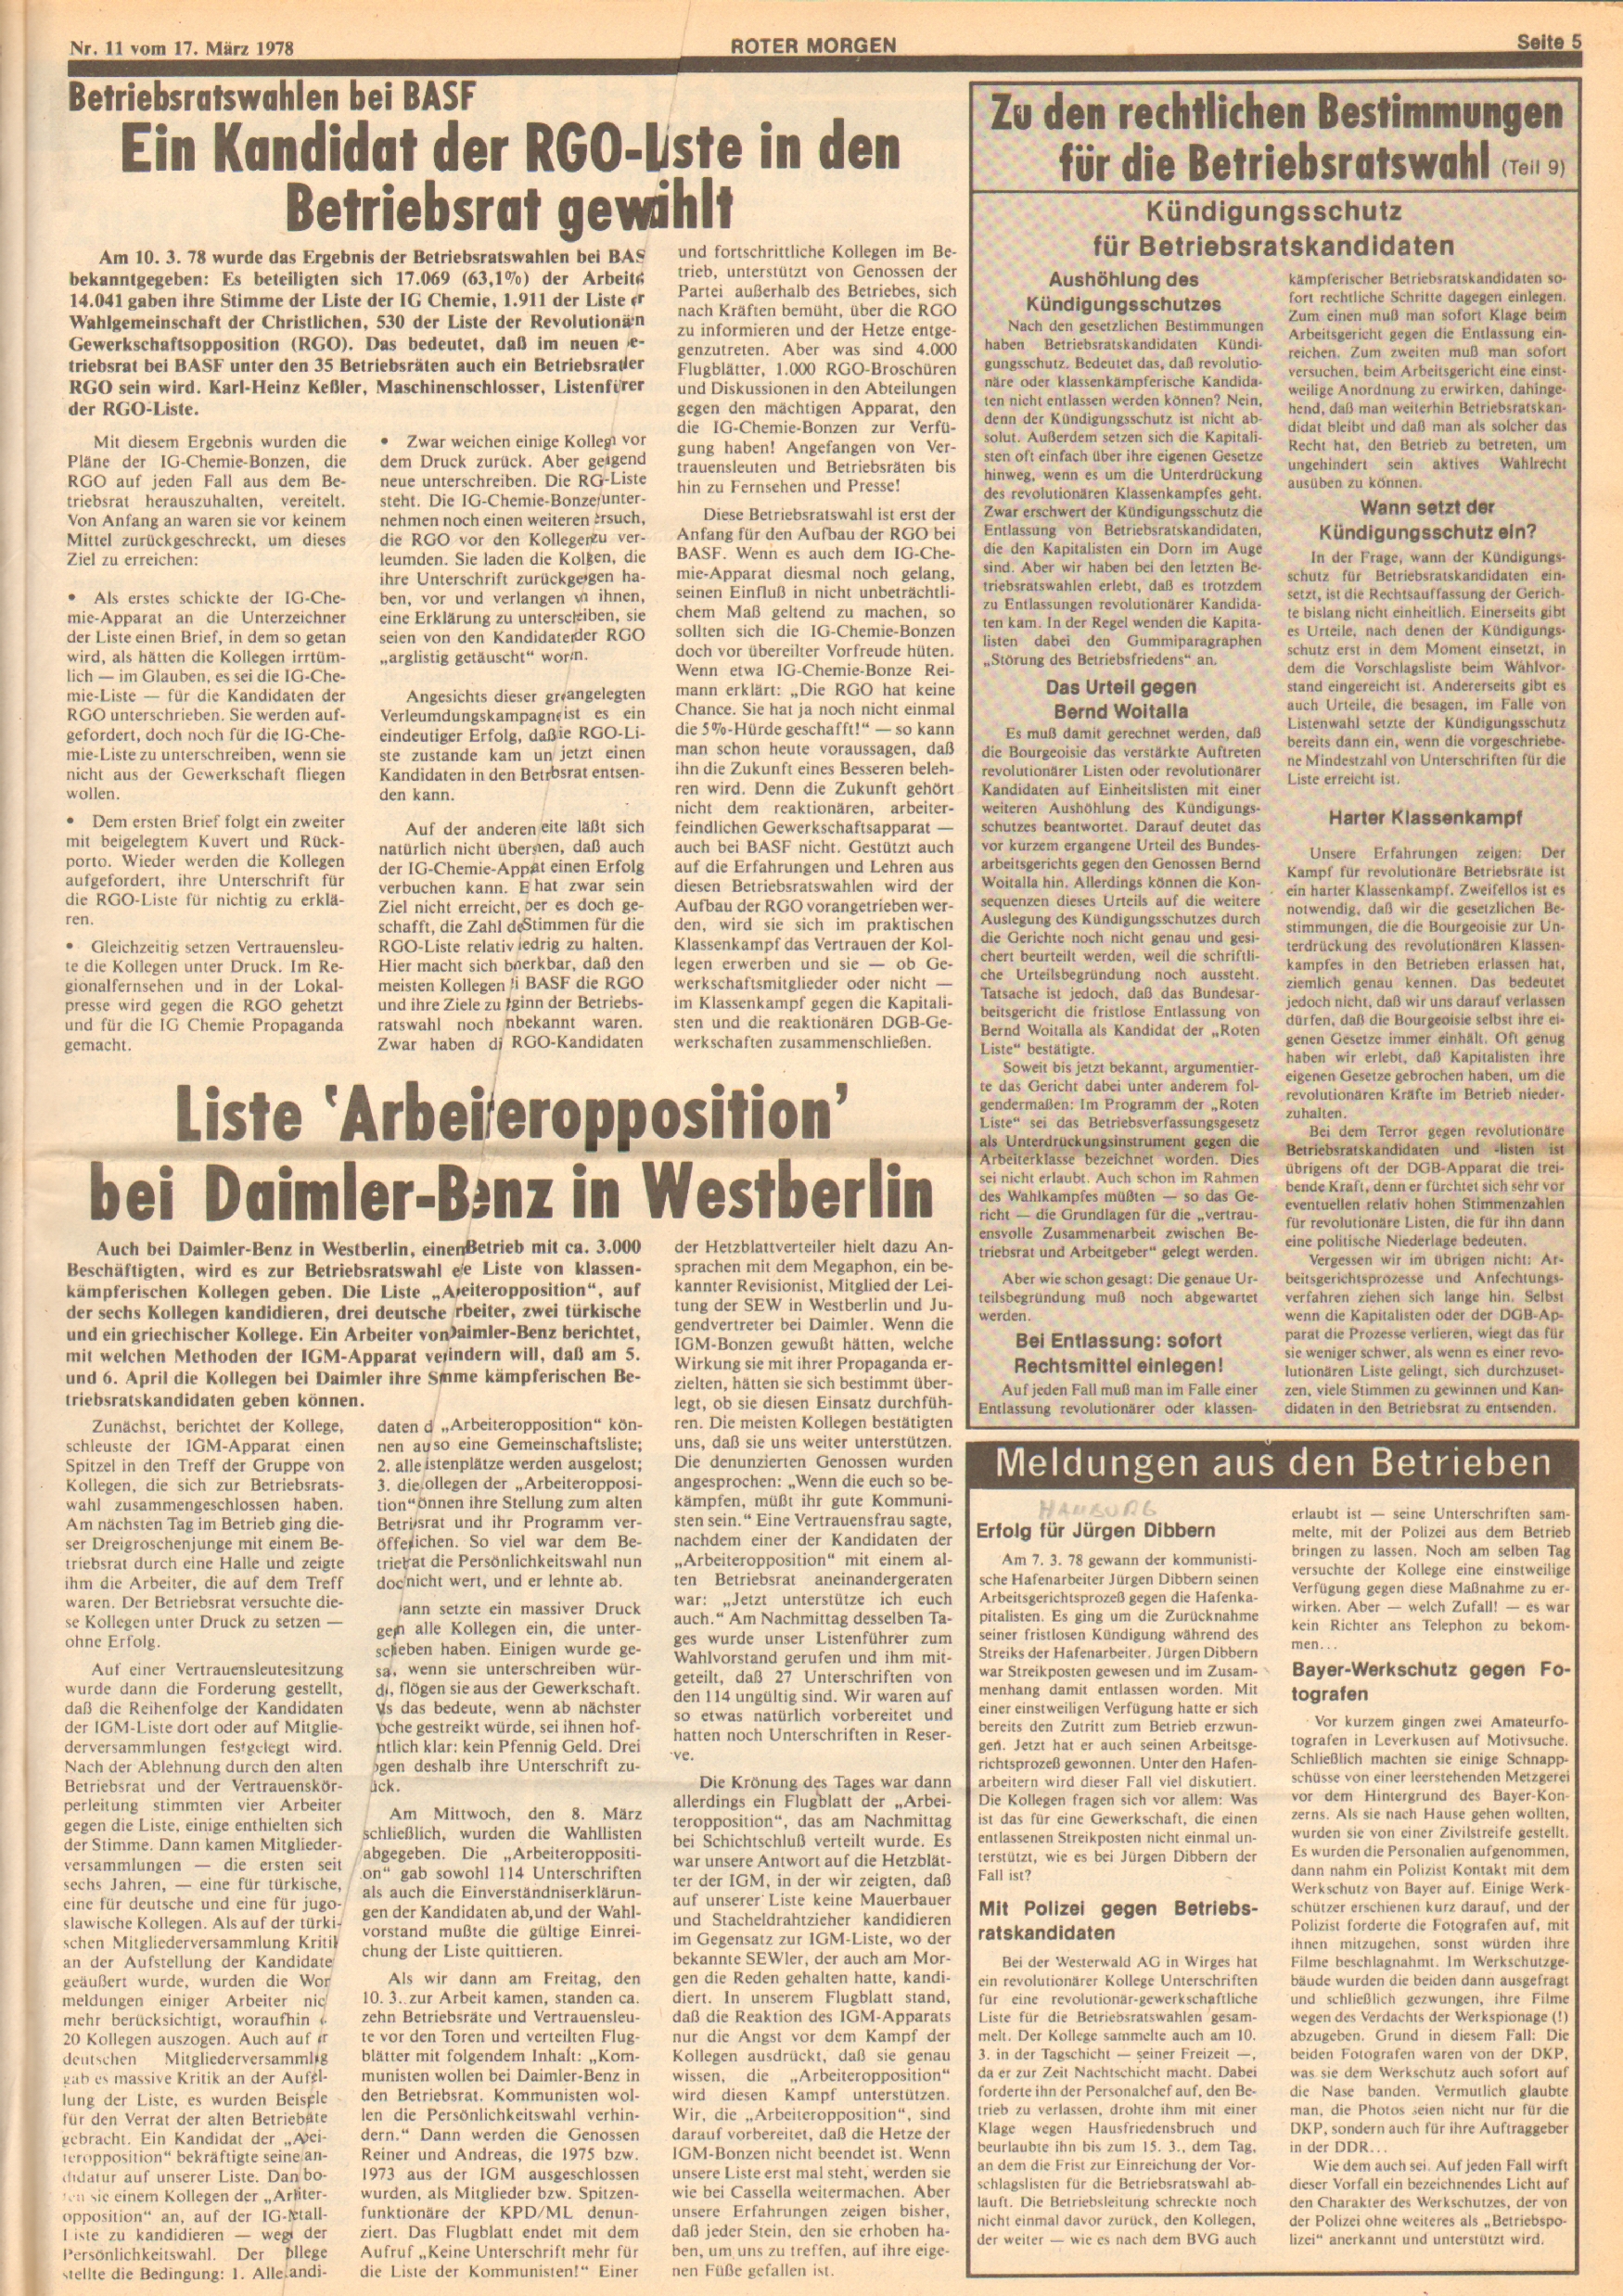 Roter Morgen, 12. Jg., 17. März 1978, Nr. 11, Seite 5